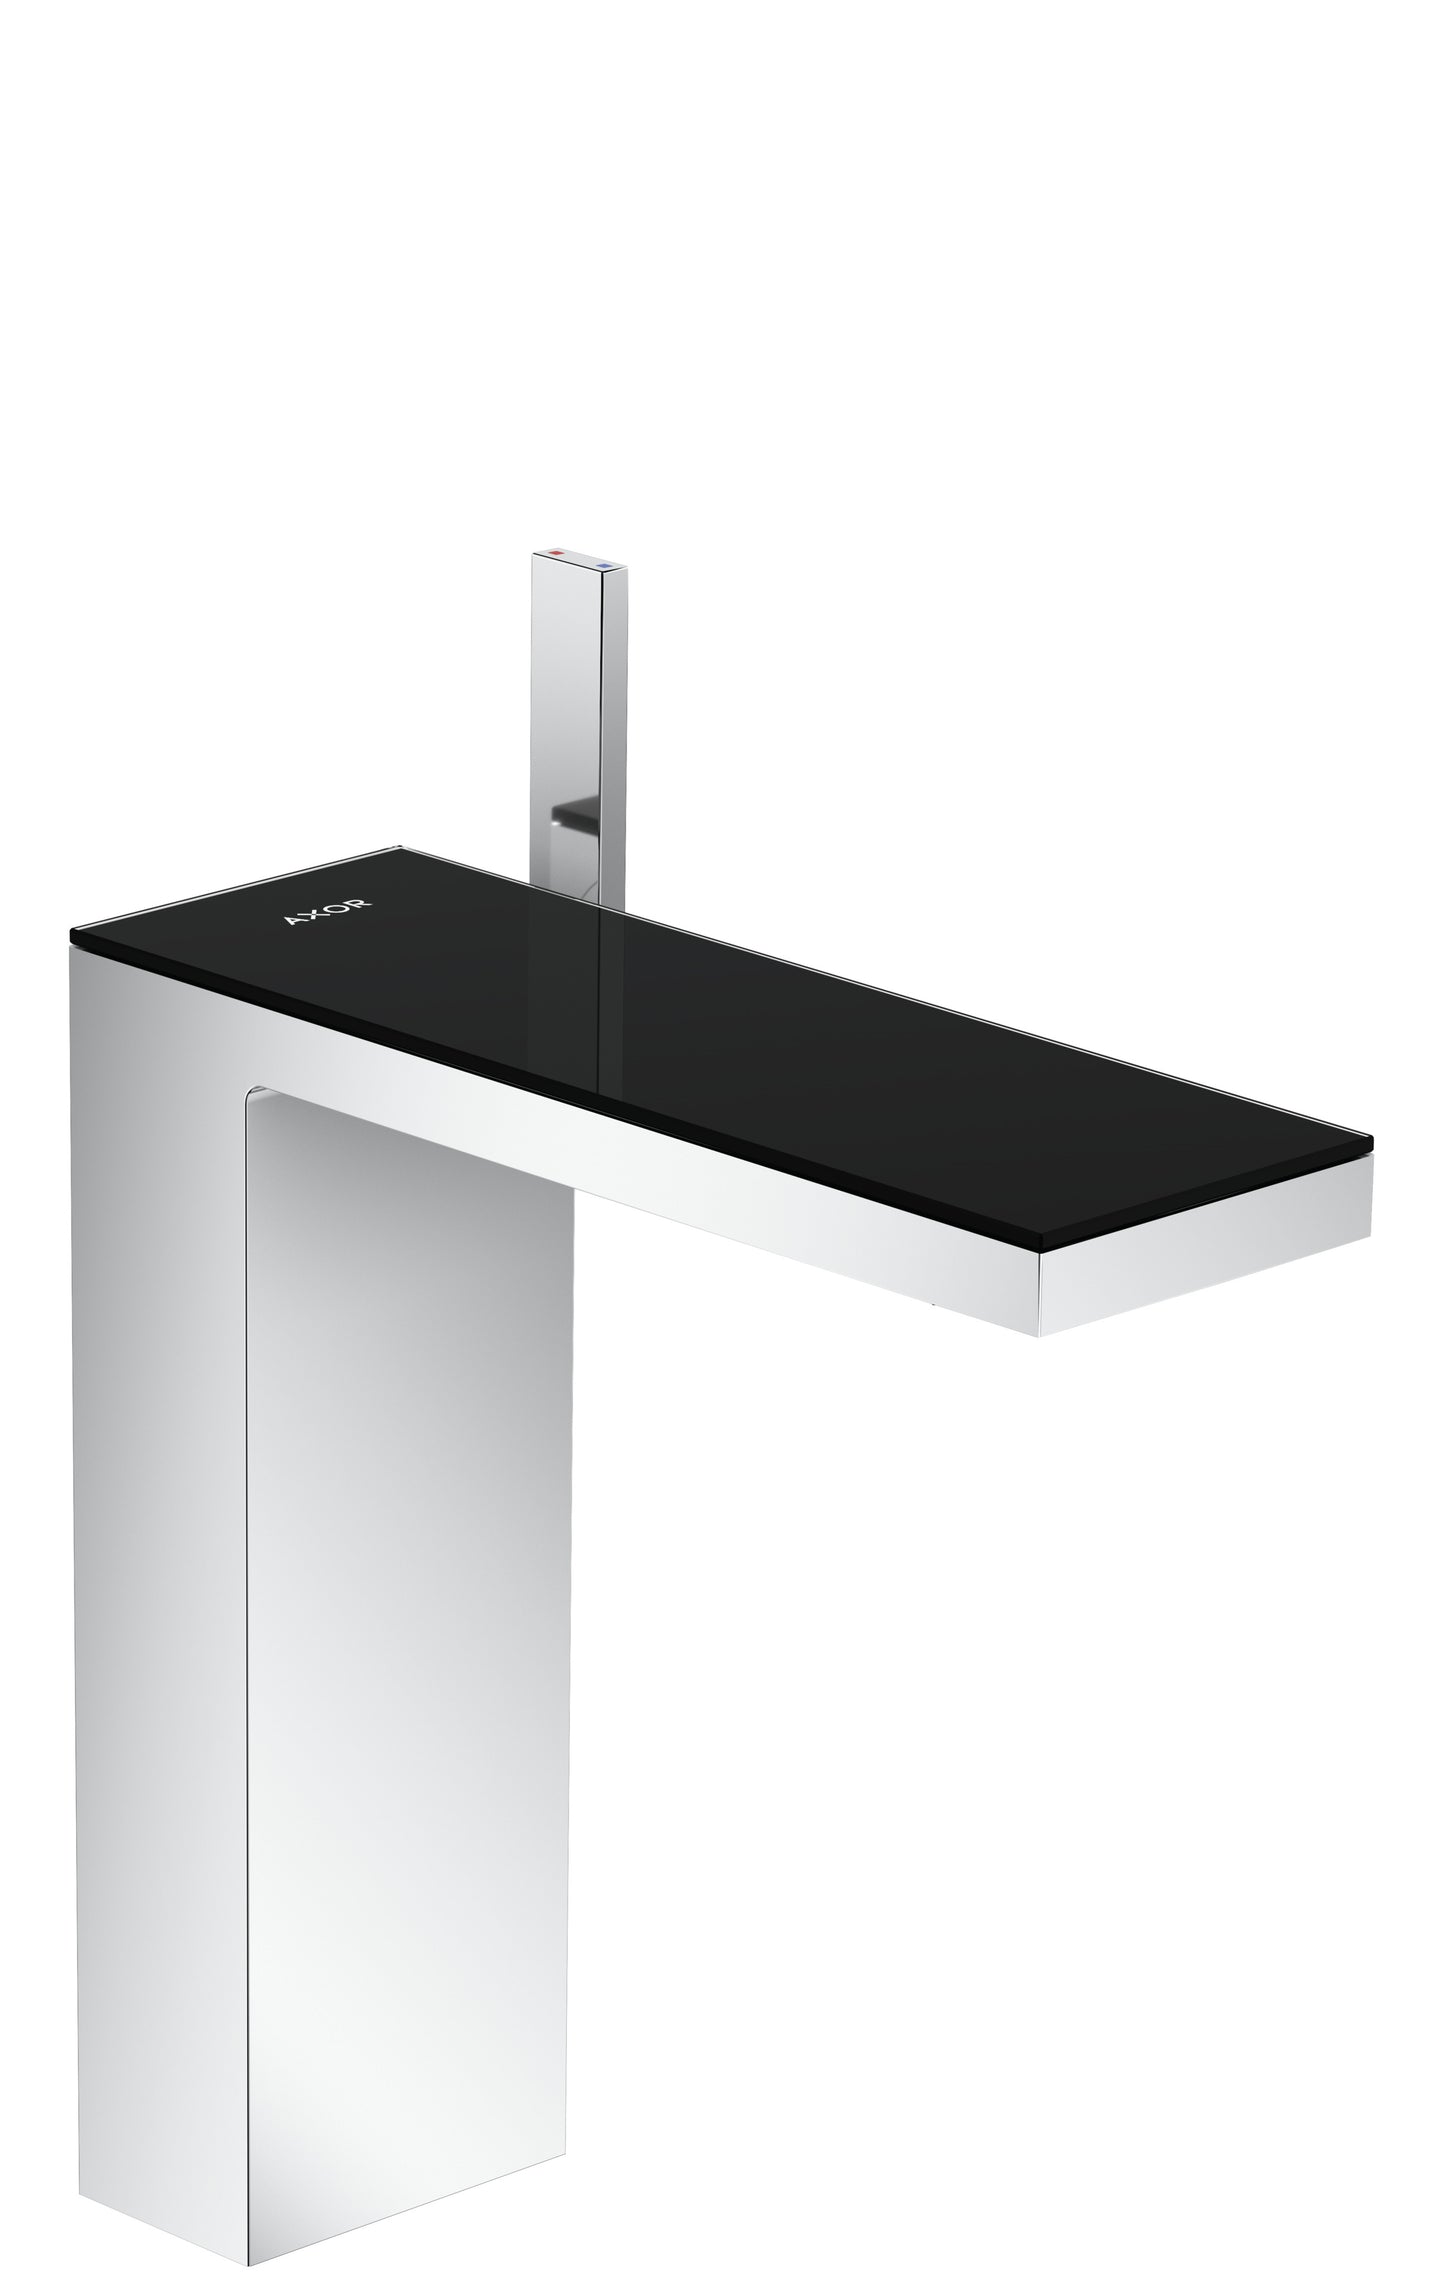 AXOR 47020601 Chrome / Black Glass MyEdition Avantgarde Single Hole Bathroom Faucet 1.2 GPM